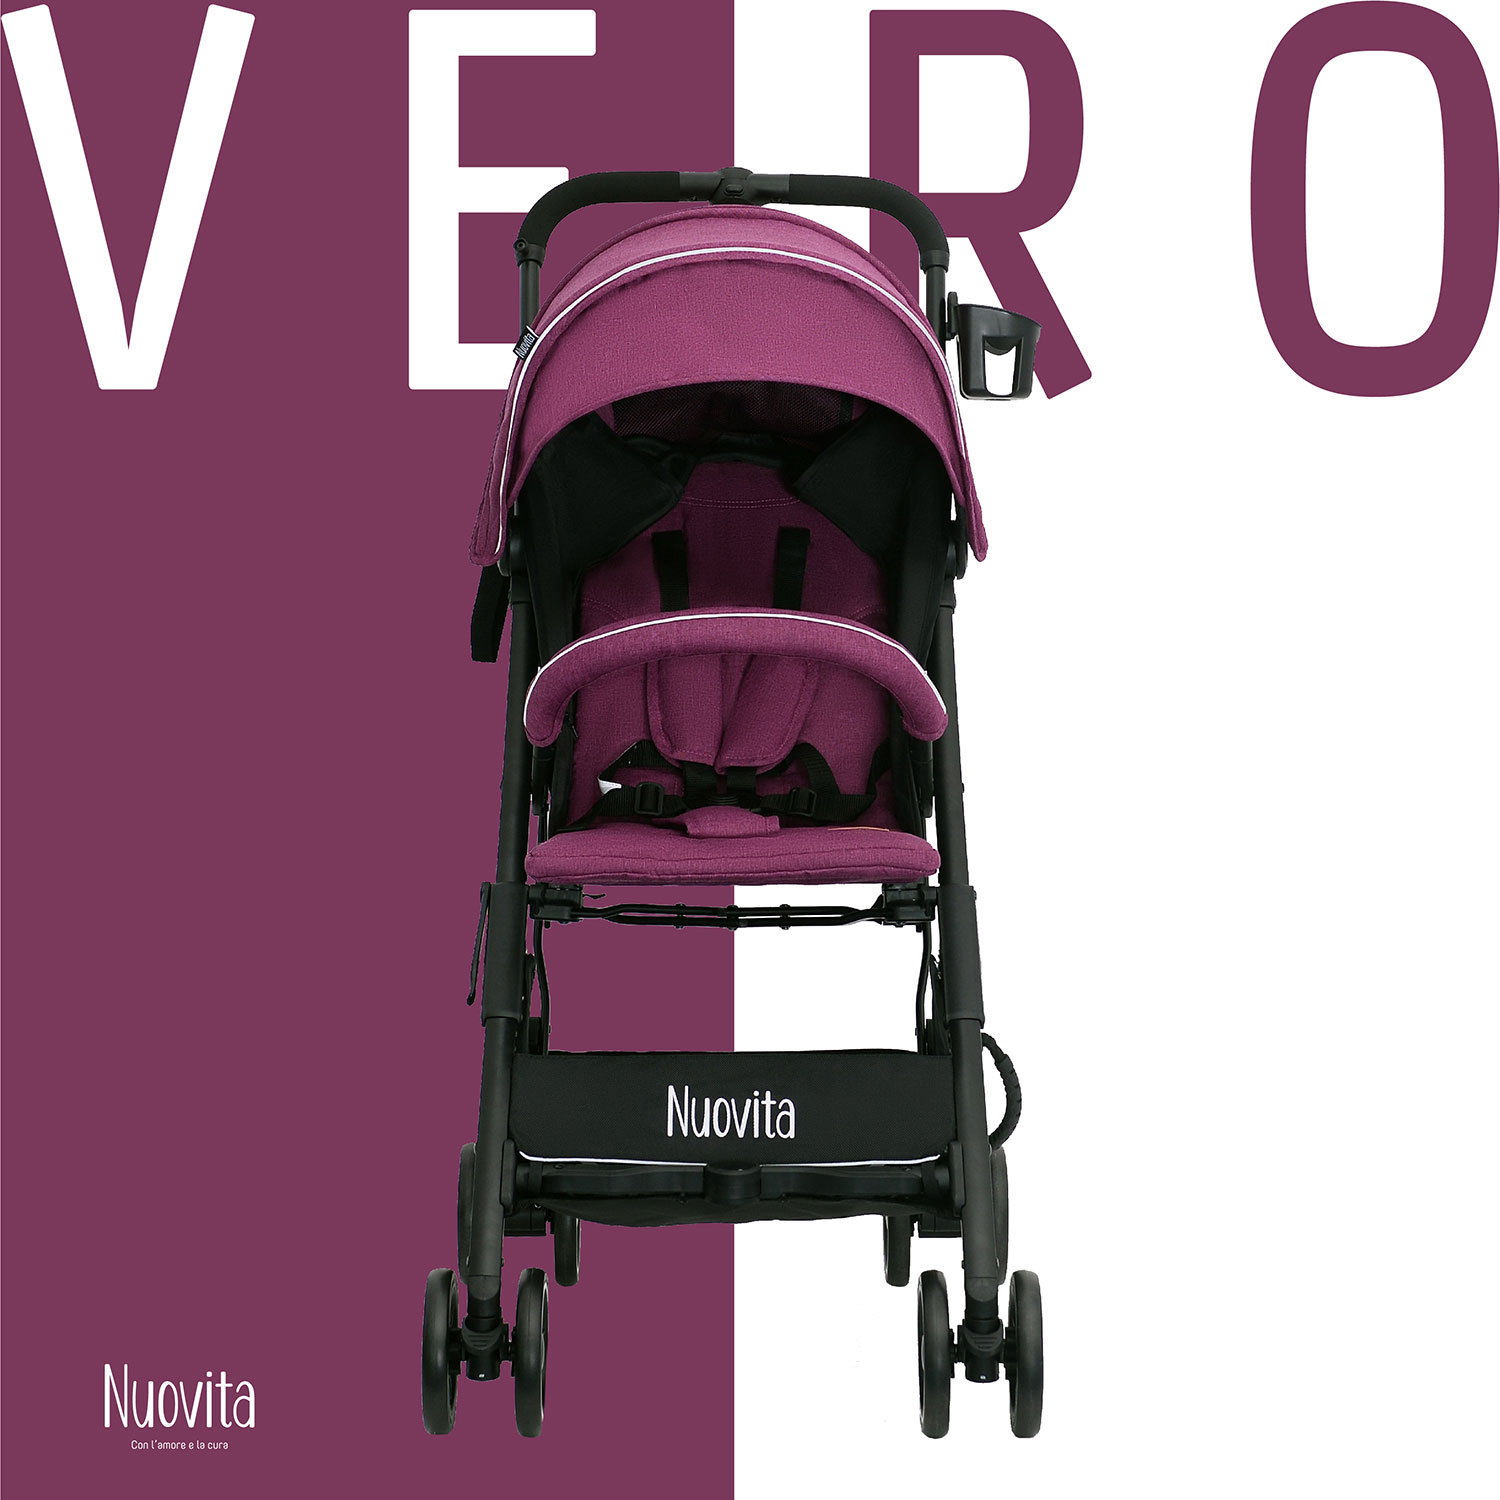 Прогулочная коляска Nuovita Vero Viola Фиолетовый прогулочная коляска nuovita corso viola nero фиолетовый